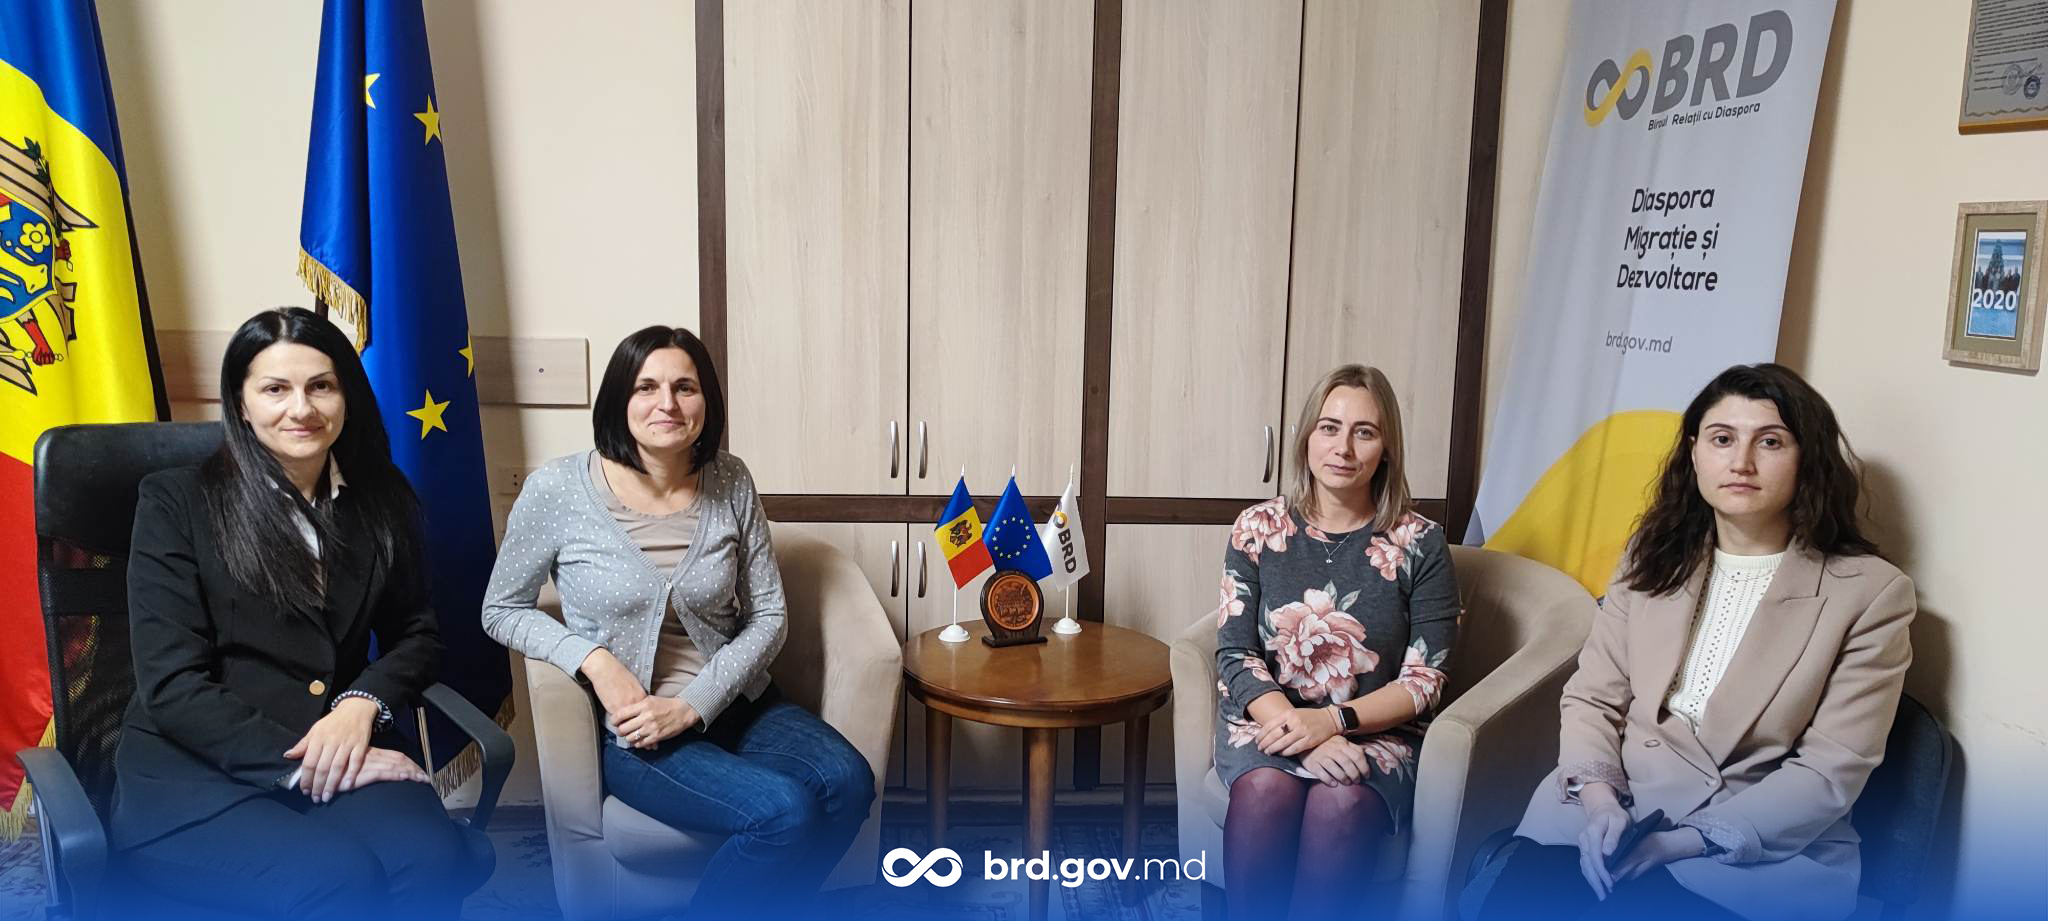 Adriana Rotaru din Belgia și Dorina Baltag din Regatul Țărilor de Jos au întreprins o vizită de documentare în Republica Moldova